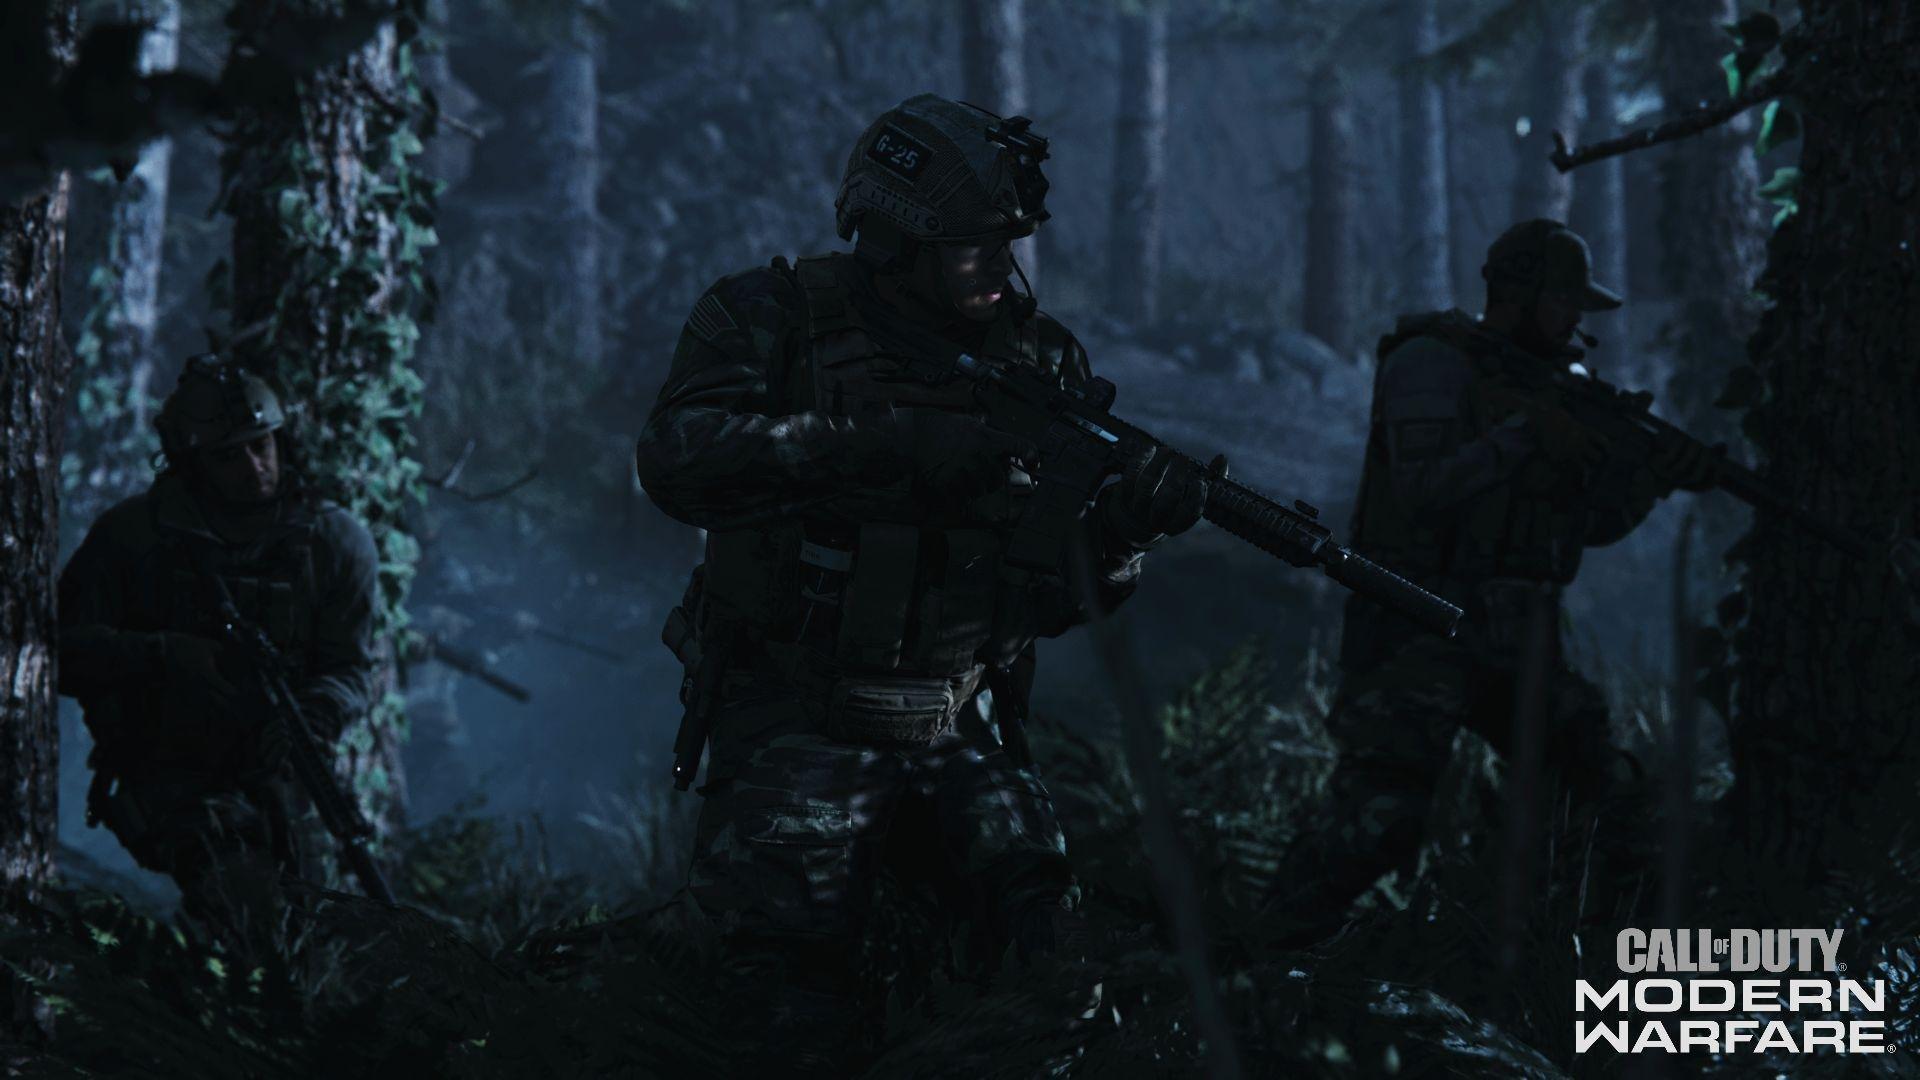 Modern Warfare overhaul is not happening, says Infinity Ward developer